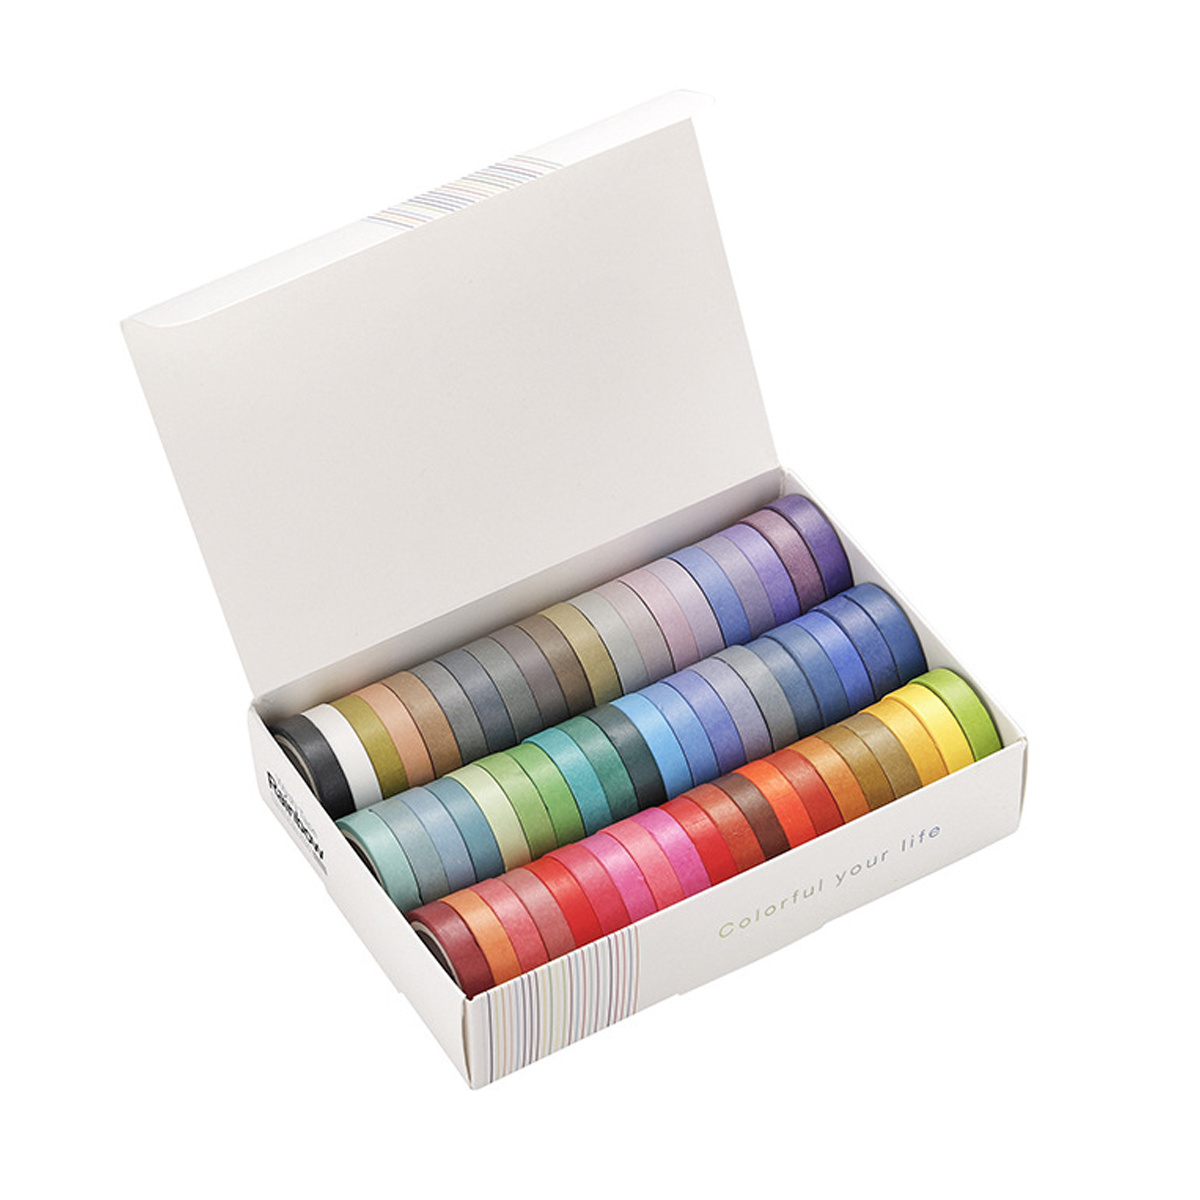 Rouleau adhesif couleur - Set de 5 couleurs